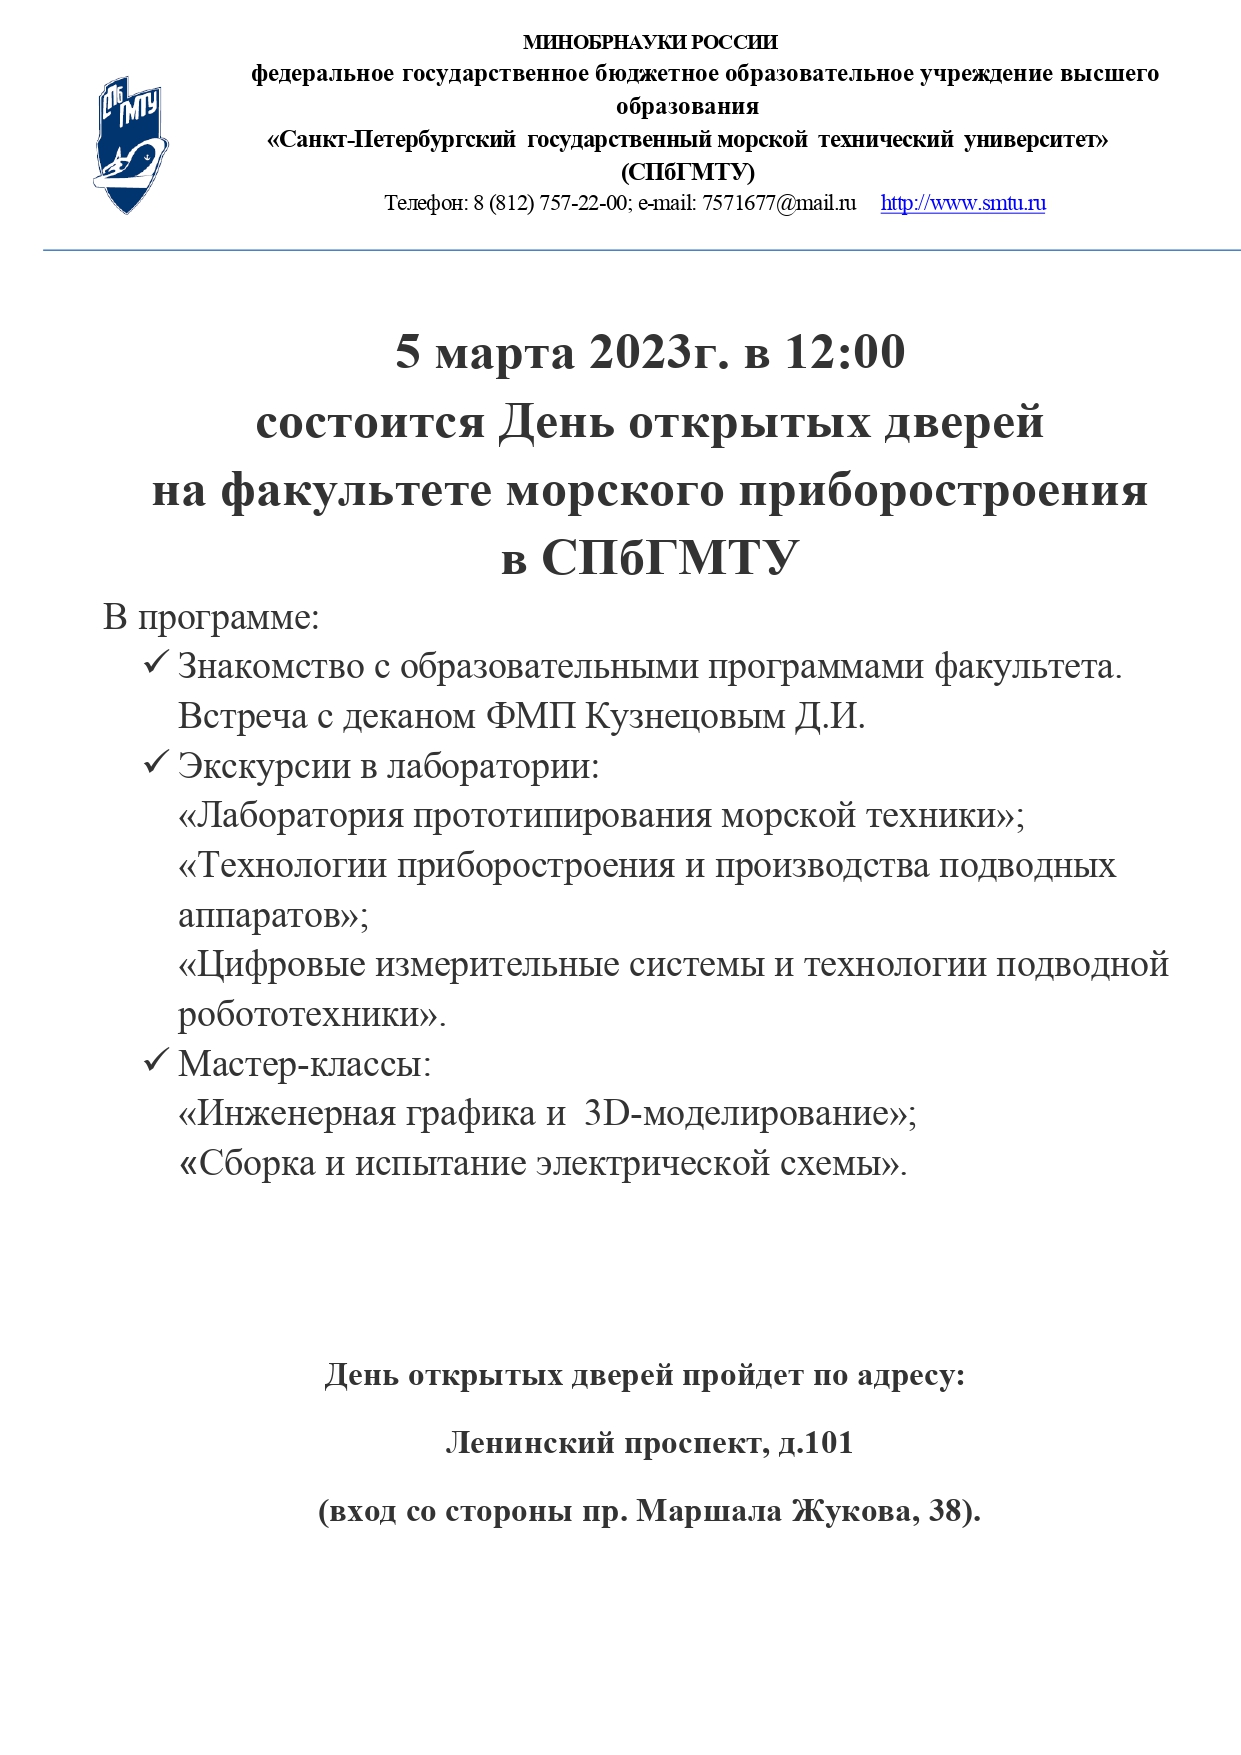 Приглашение ДОД СПбГМТУ 05.03.2023